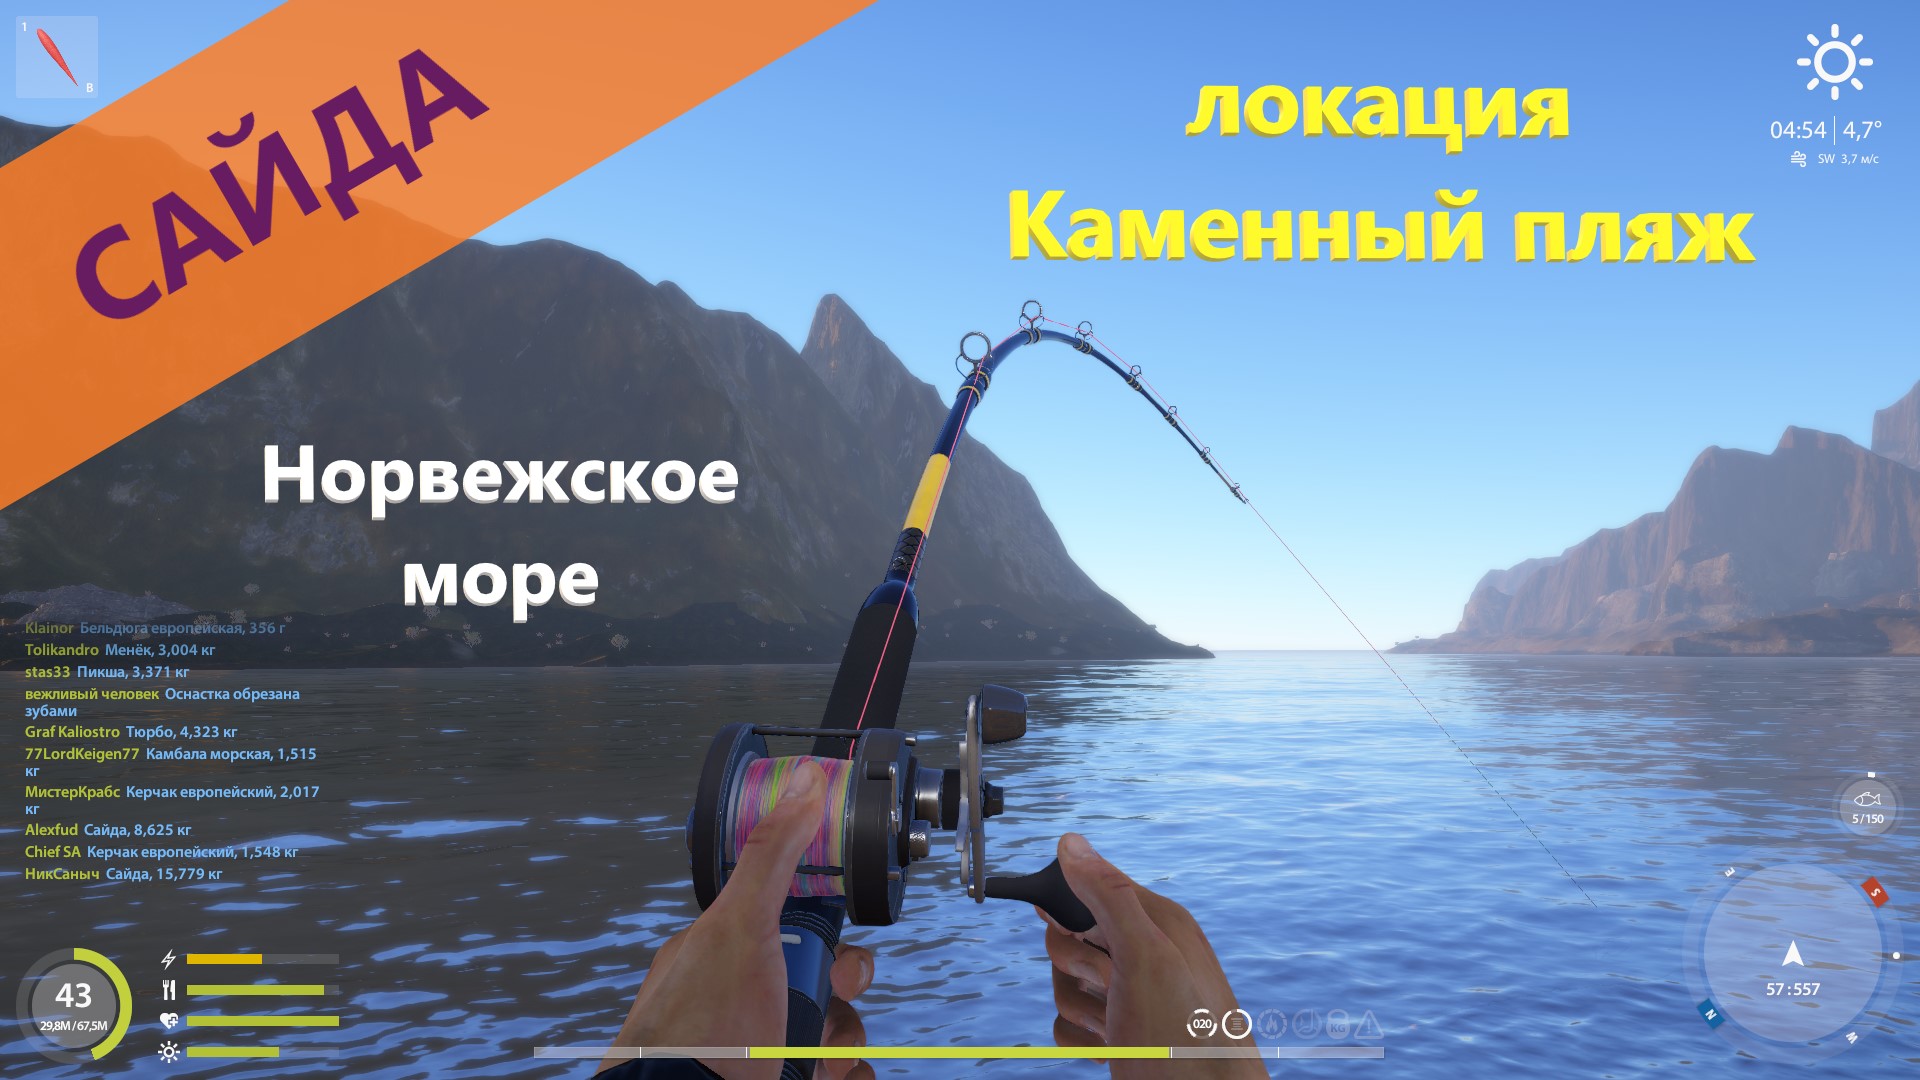 Русская рыбалка 4 норвежское море привлекающие